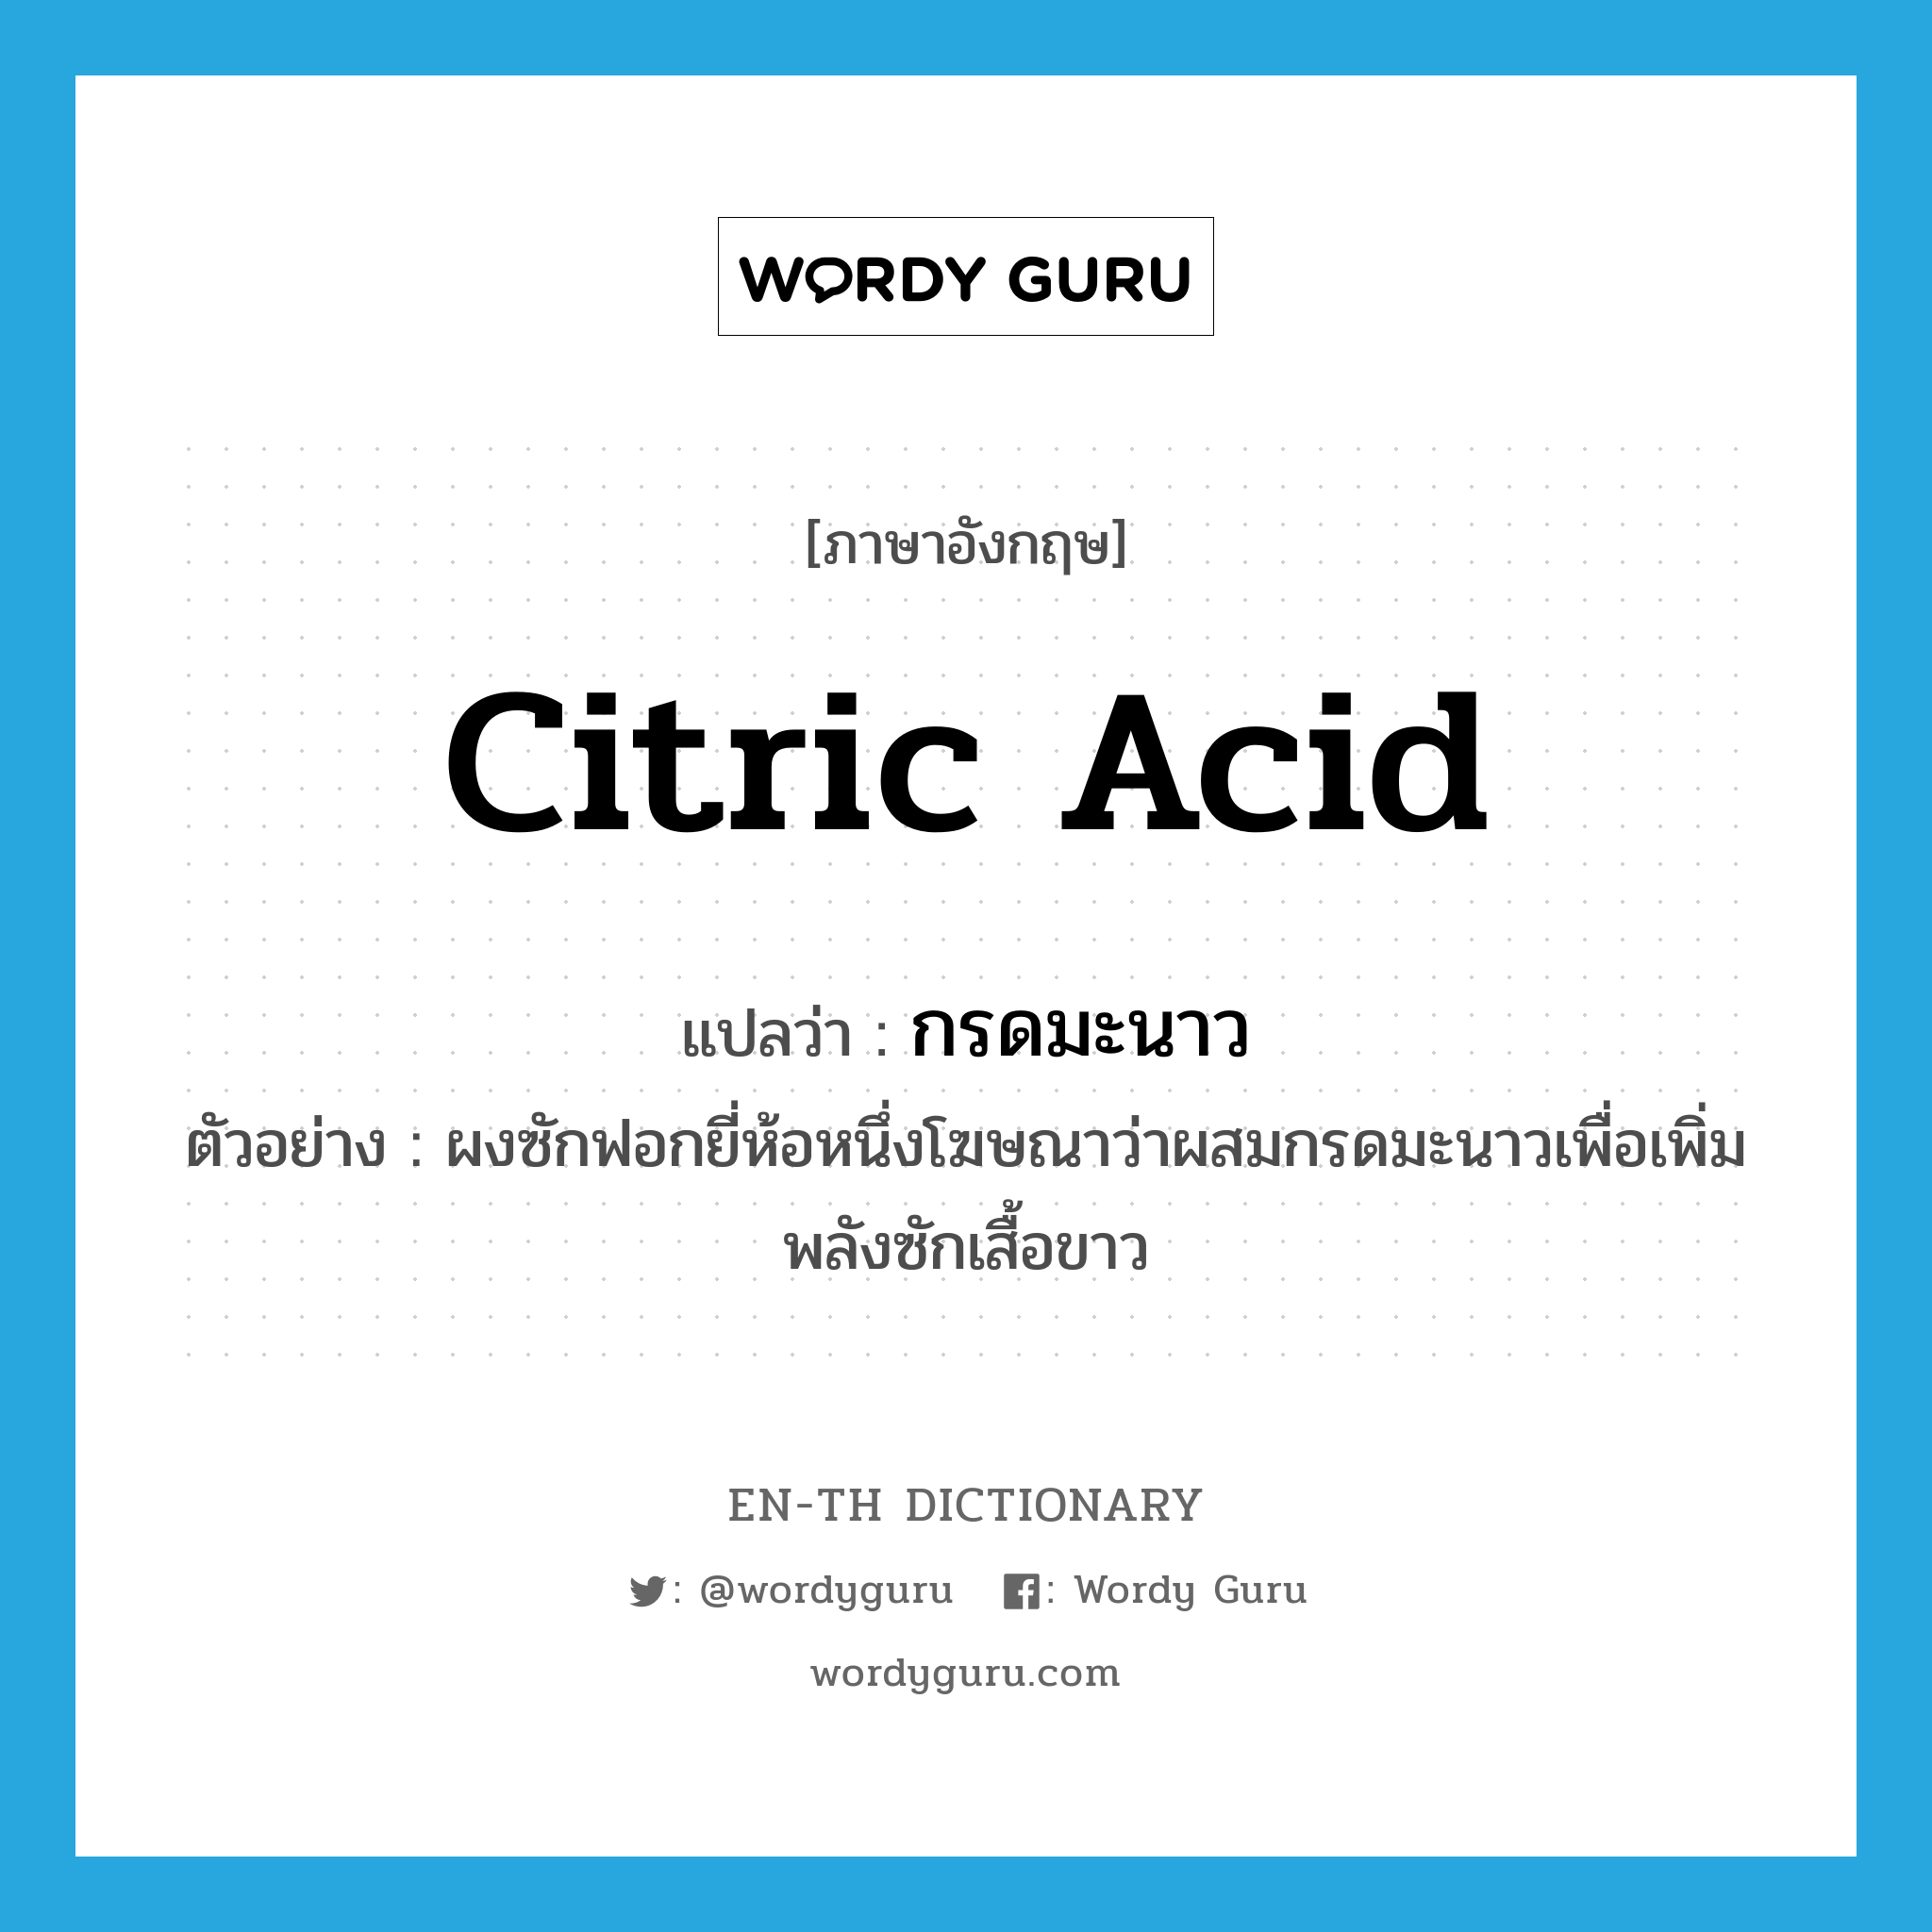 citric acid แปลว่า?, คำศัพท์ภาษาอังกฤษ citric acid แปลว่า กรดมะนาว ประเภท N ตัวอย่าง ผงซักฟอกยี่ห้อหนึ่งโฆษณาว่าผสมกรดมะนาวเพื่อเพิ่มพลังซักเสื้อขาว หมวด N